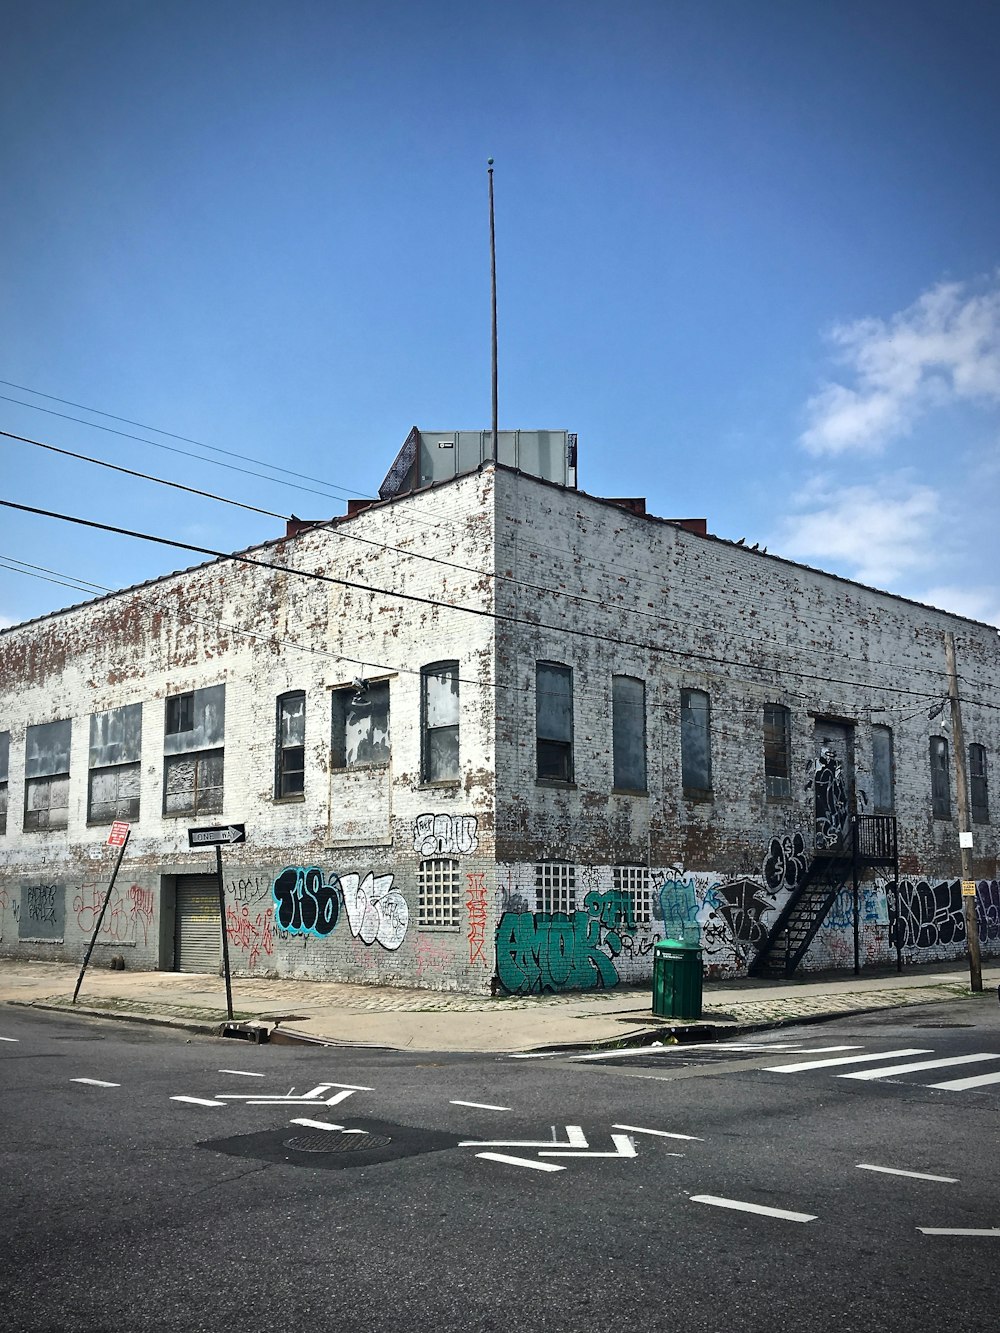 Eckfoto eines mittelhohen Gebäudes aus grauem Beton